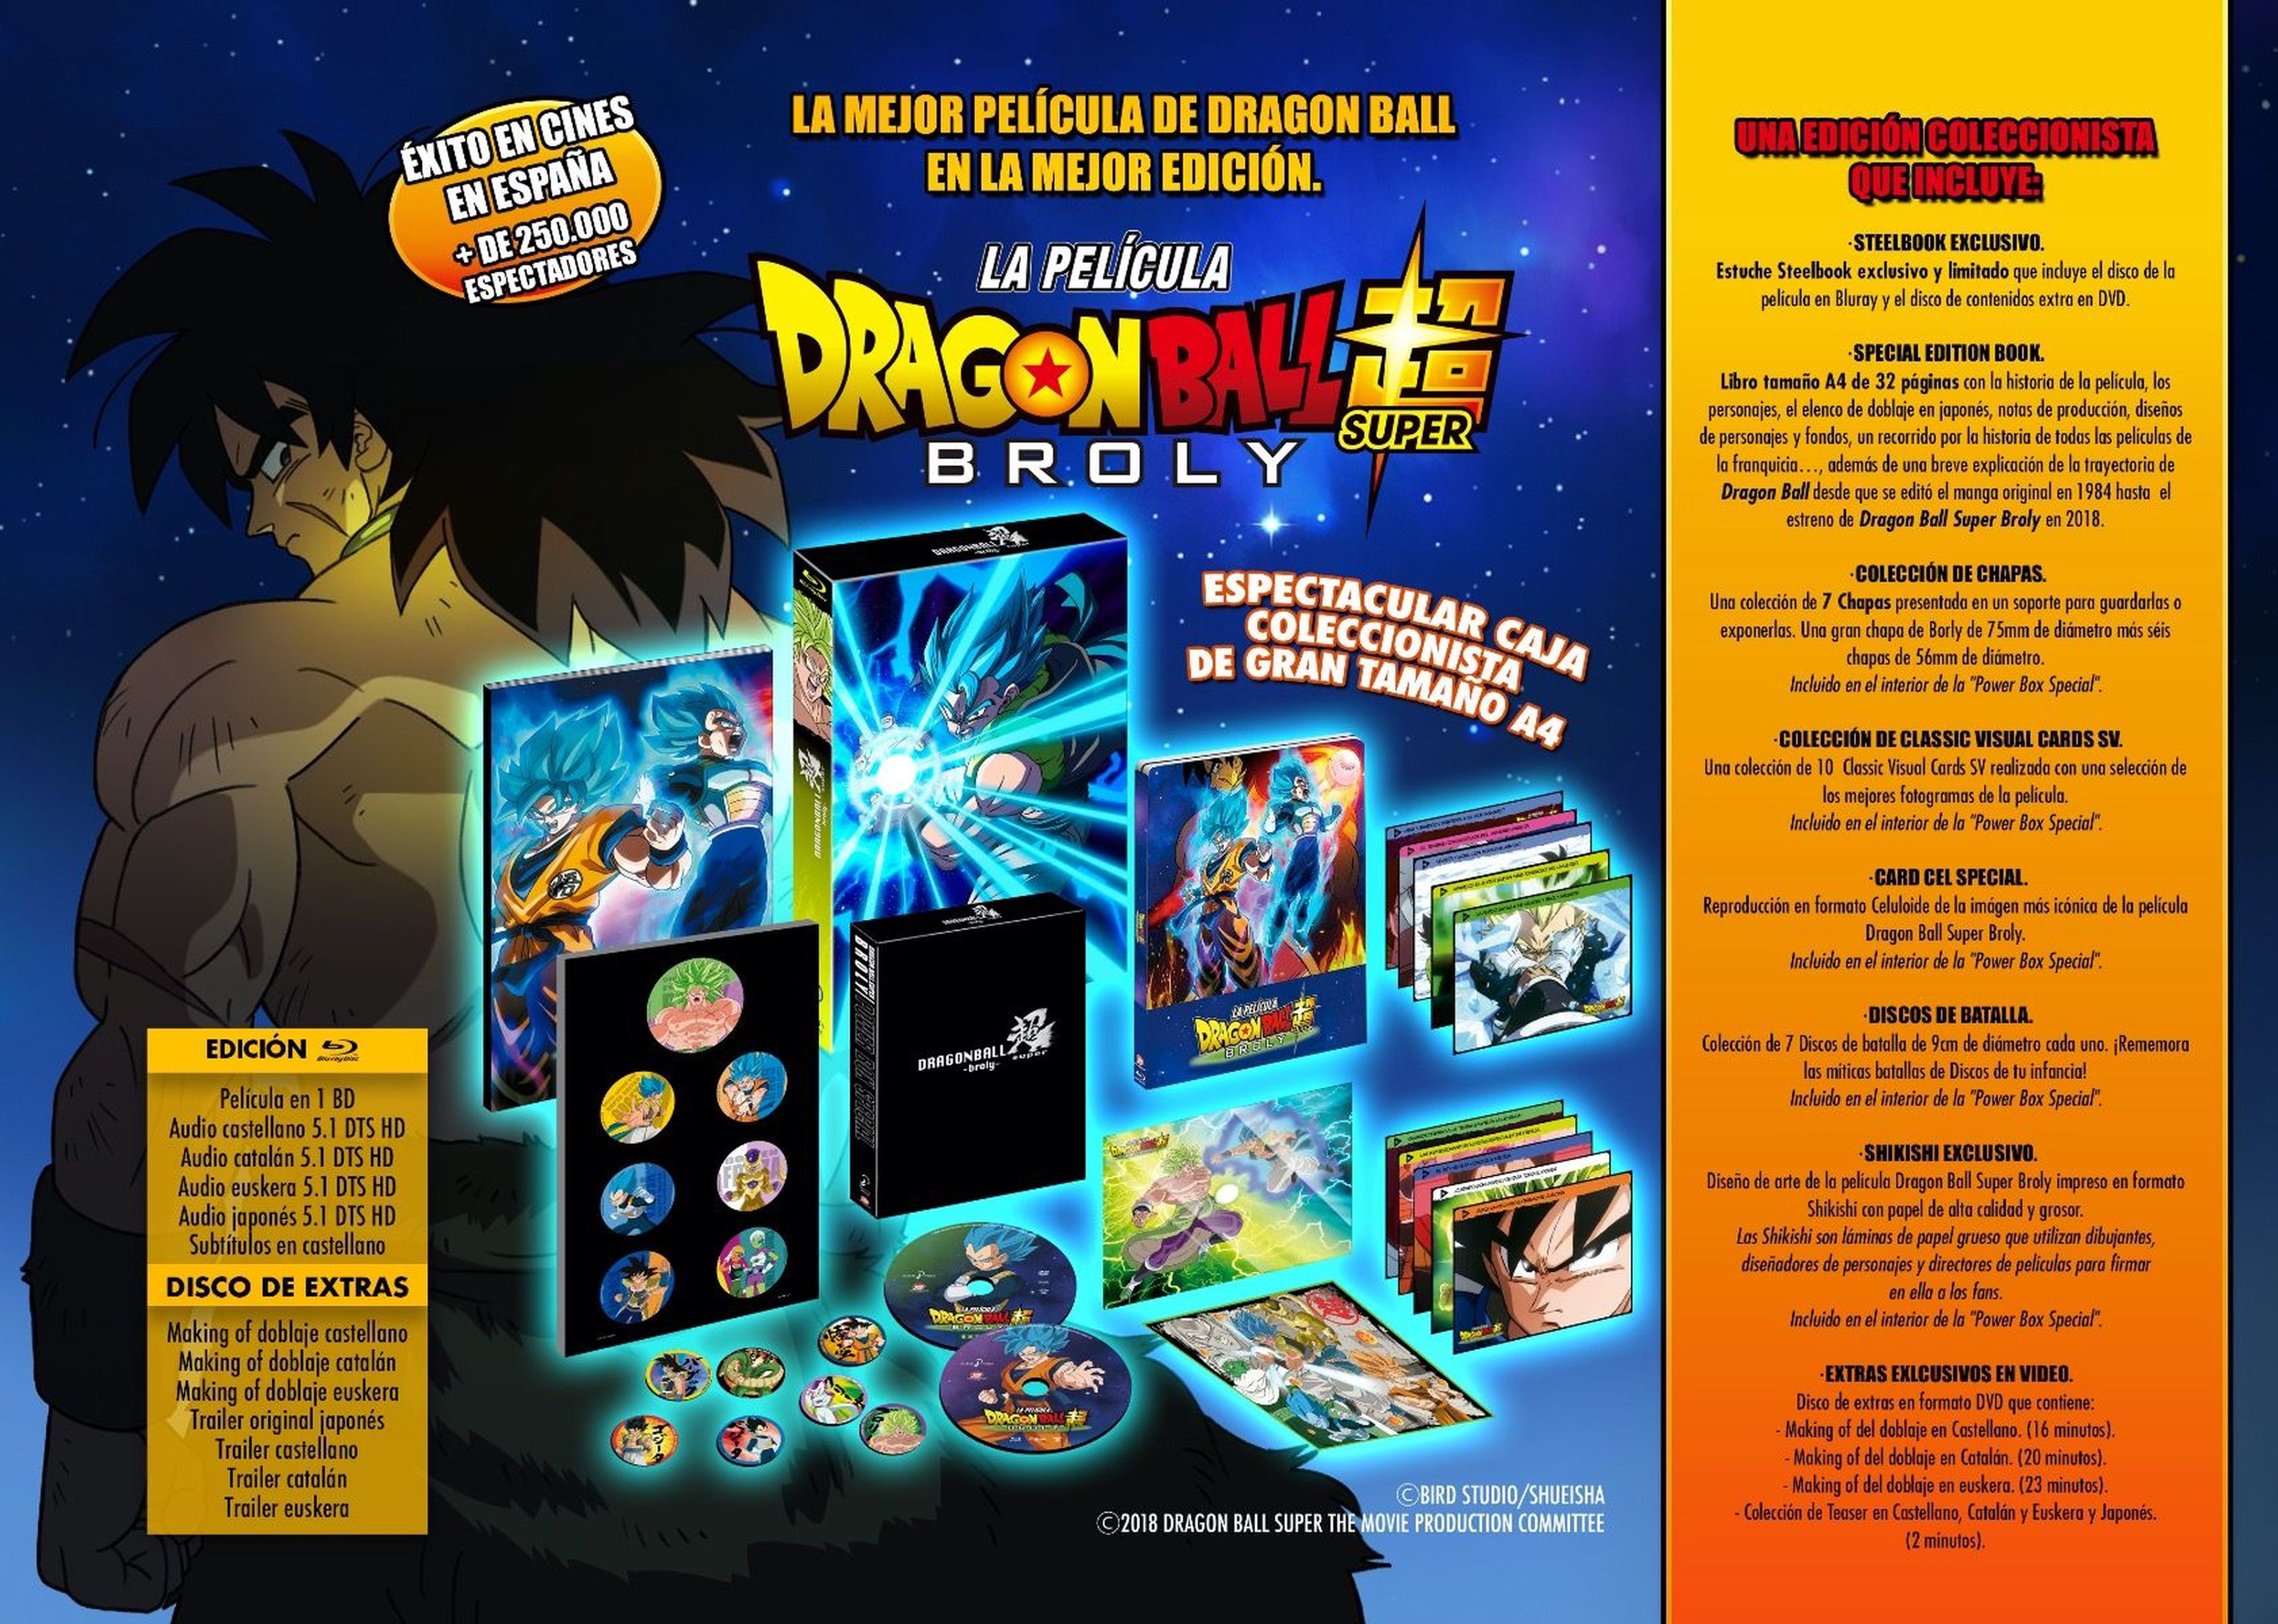 Dragon Ball Super Broly - España tendrá la mejor edición coleccionista del planeta gracias a Selecta Visión